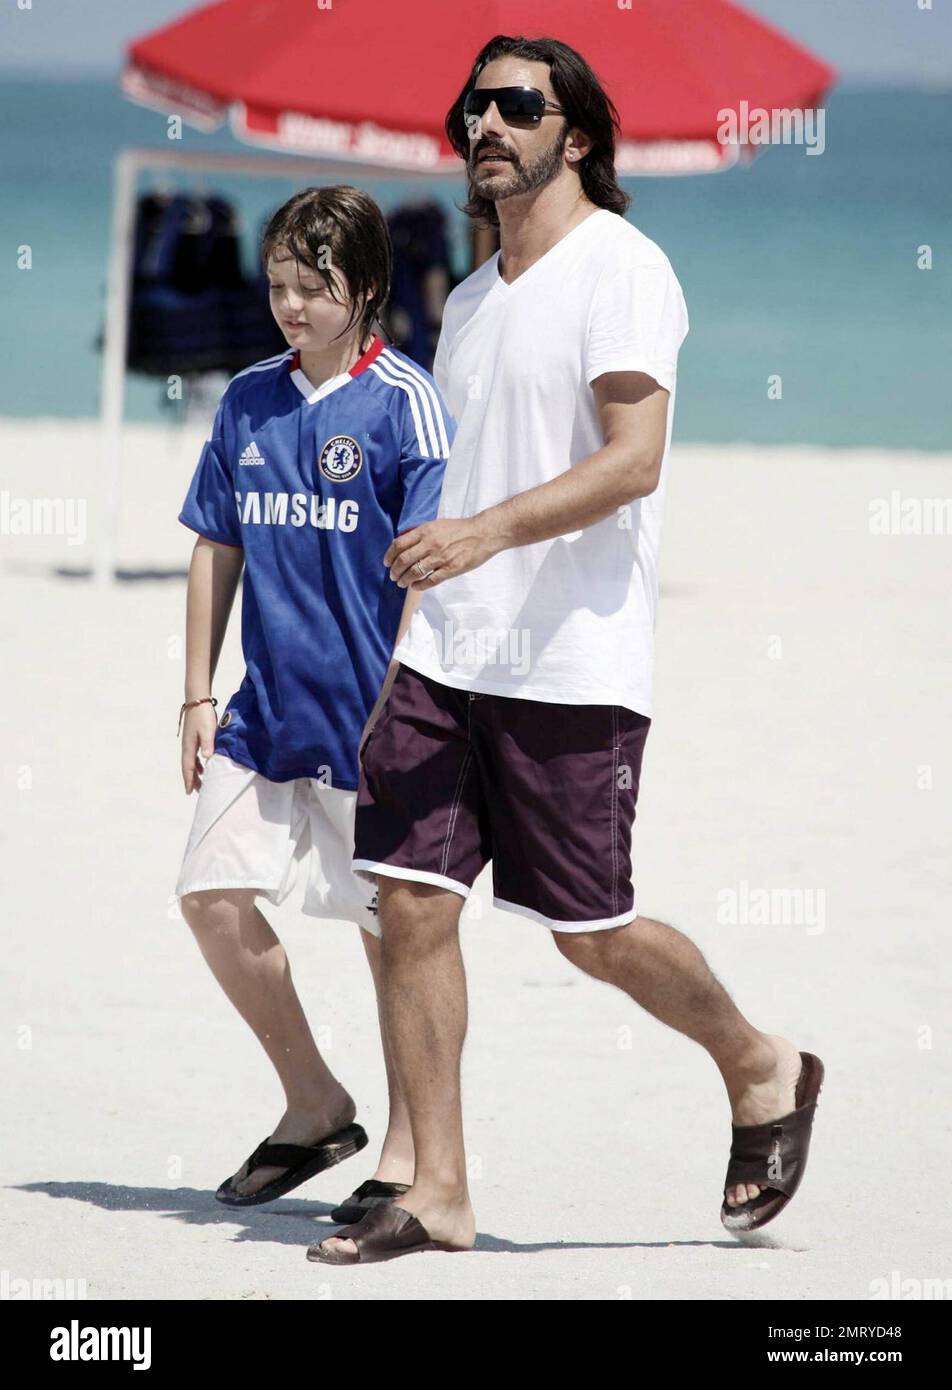 L'acteur argentin Fabian Mazzei épouse sa petite amie, le modèle argentin  et l'actrice Araceli Gonzalez, alors qu'ils passent un moment de qualité  avec leur famille sur la plage de Miami. Gonzalez, qui